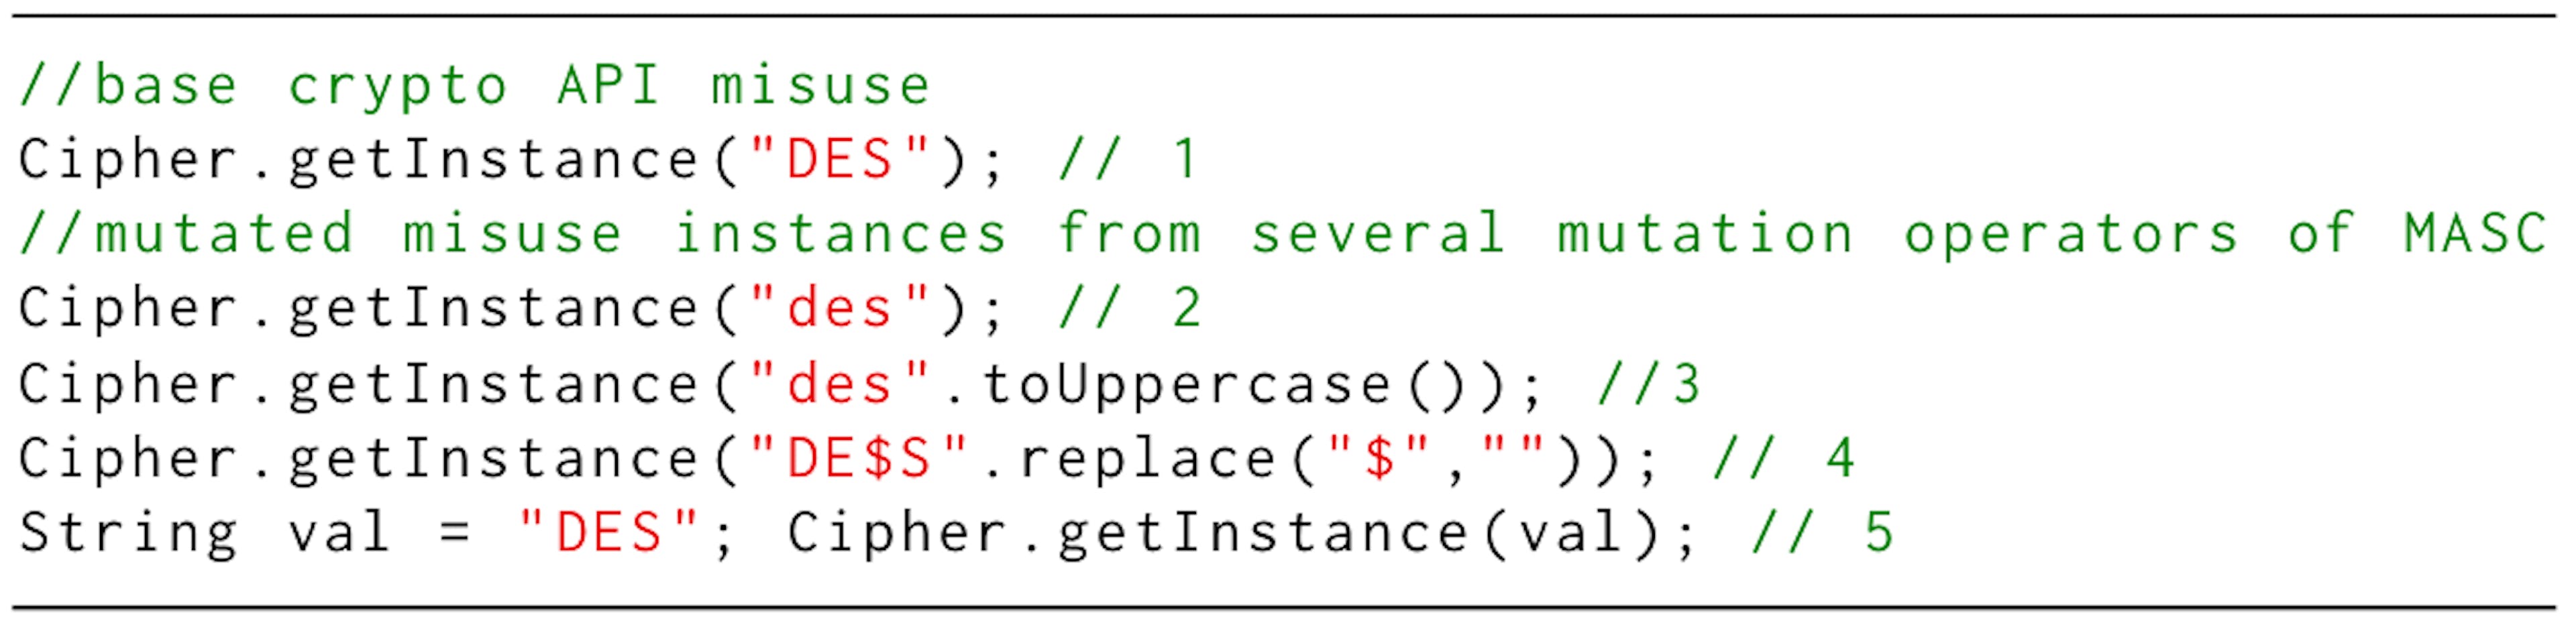 リスト 1: MASC によって作成された暗号 API の誤用インスタンスの例